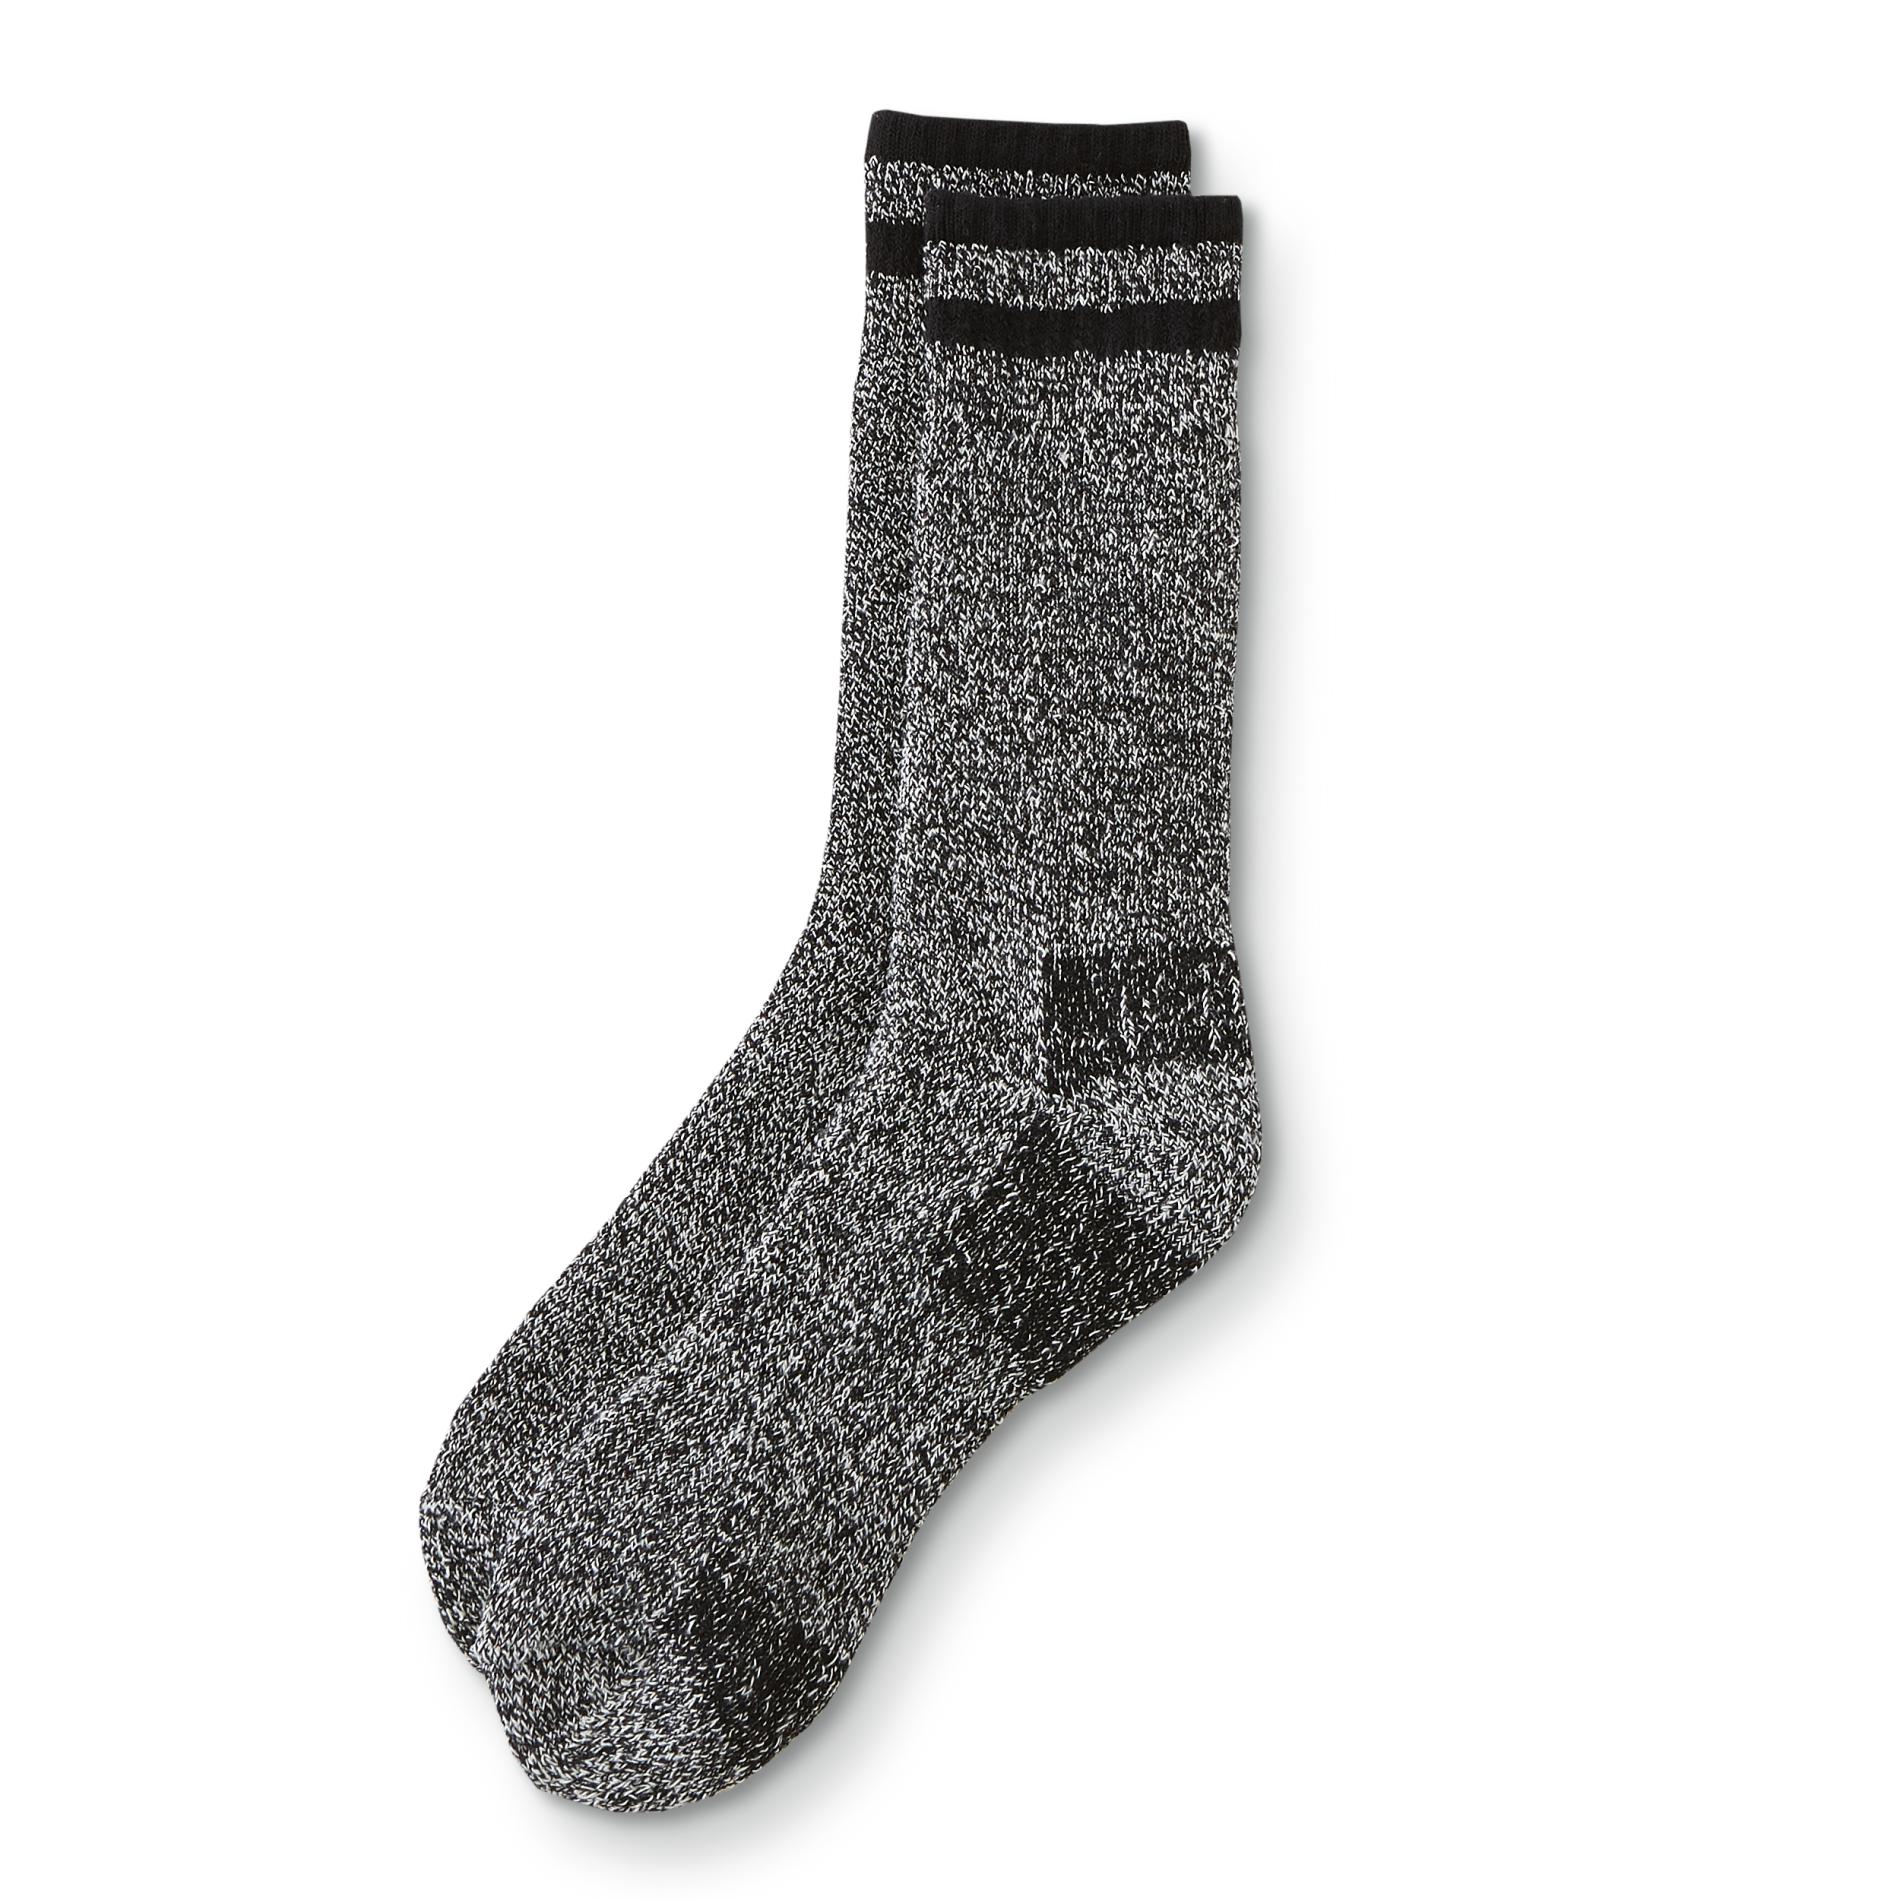 Kodiak Men's 2-Pairs Thermal Crew Socks - Marled